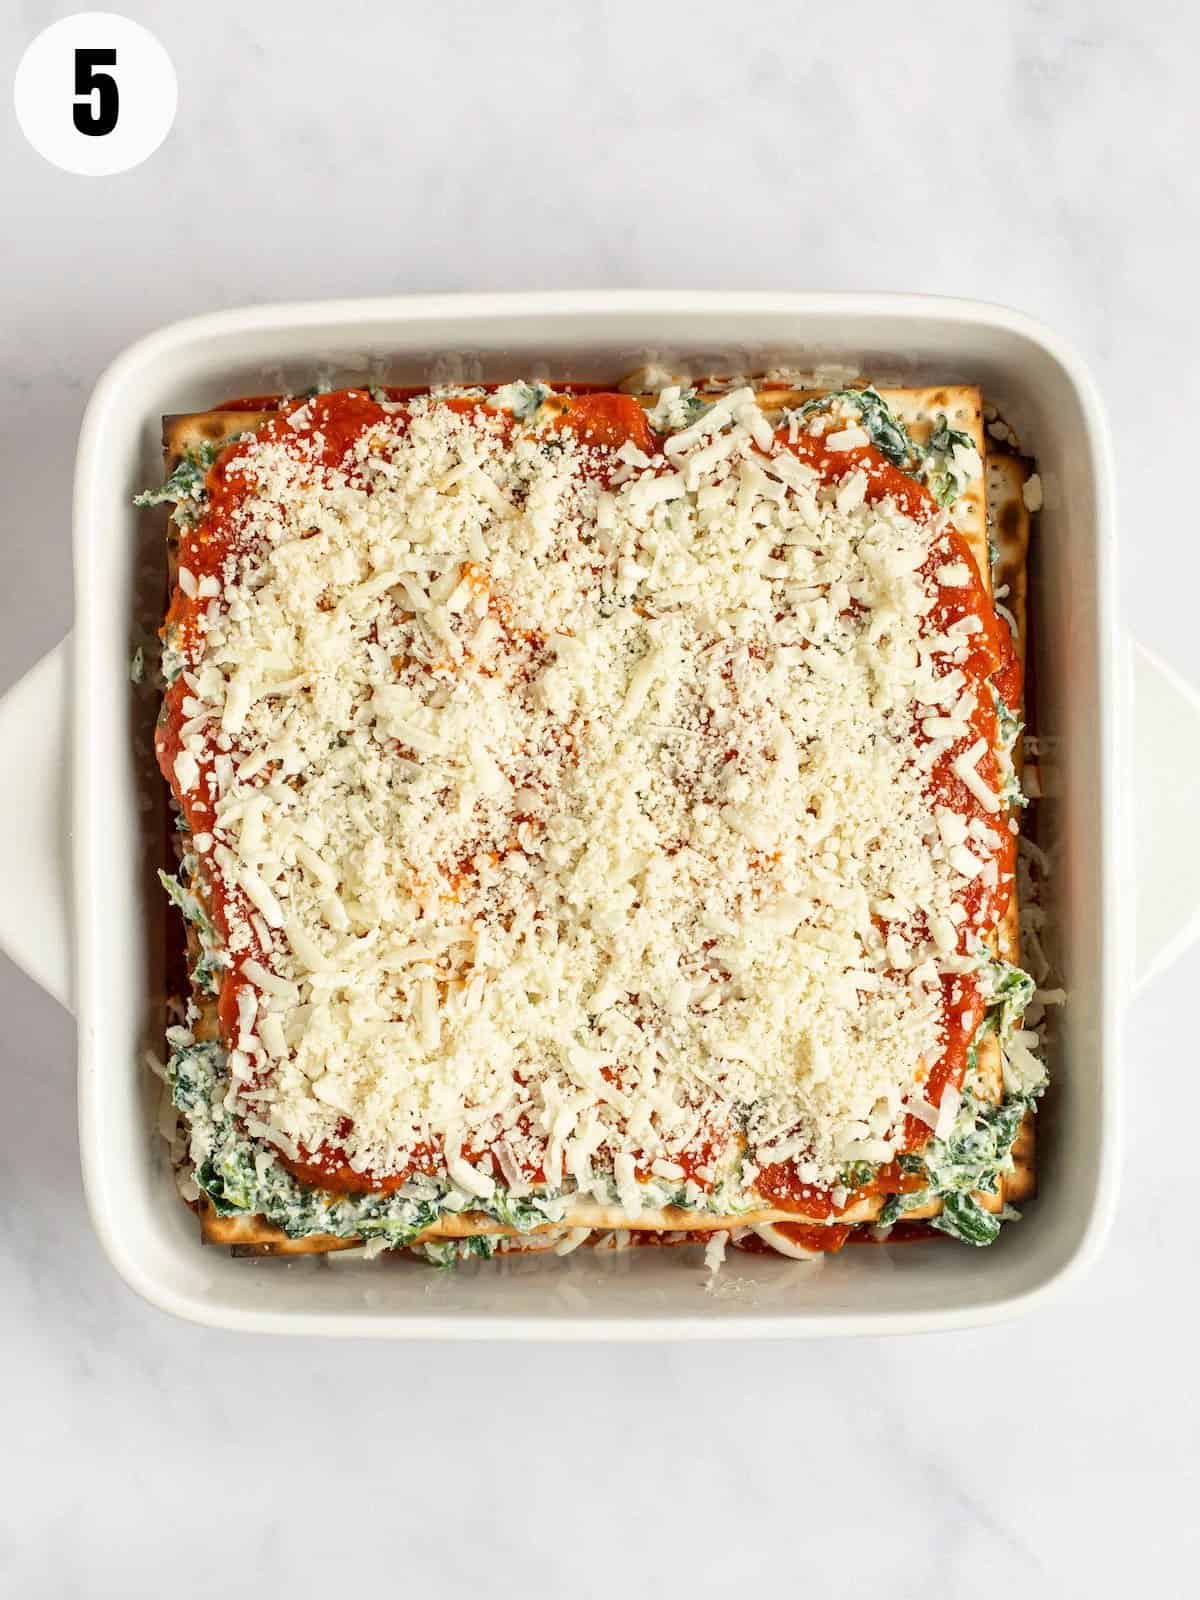 Mozzarella layered on marinara sauce and spinach making lasagna.